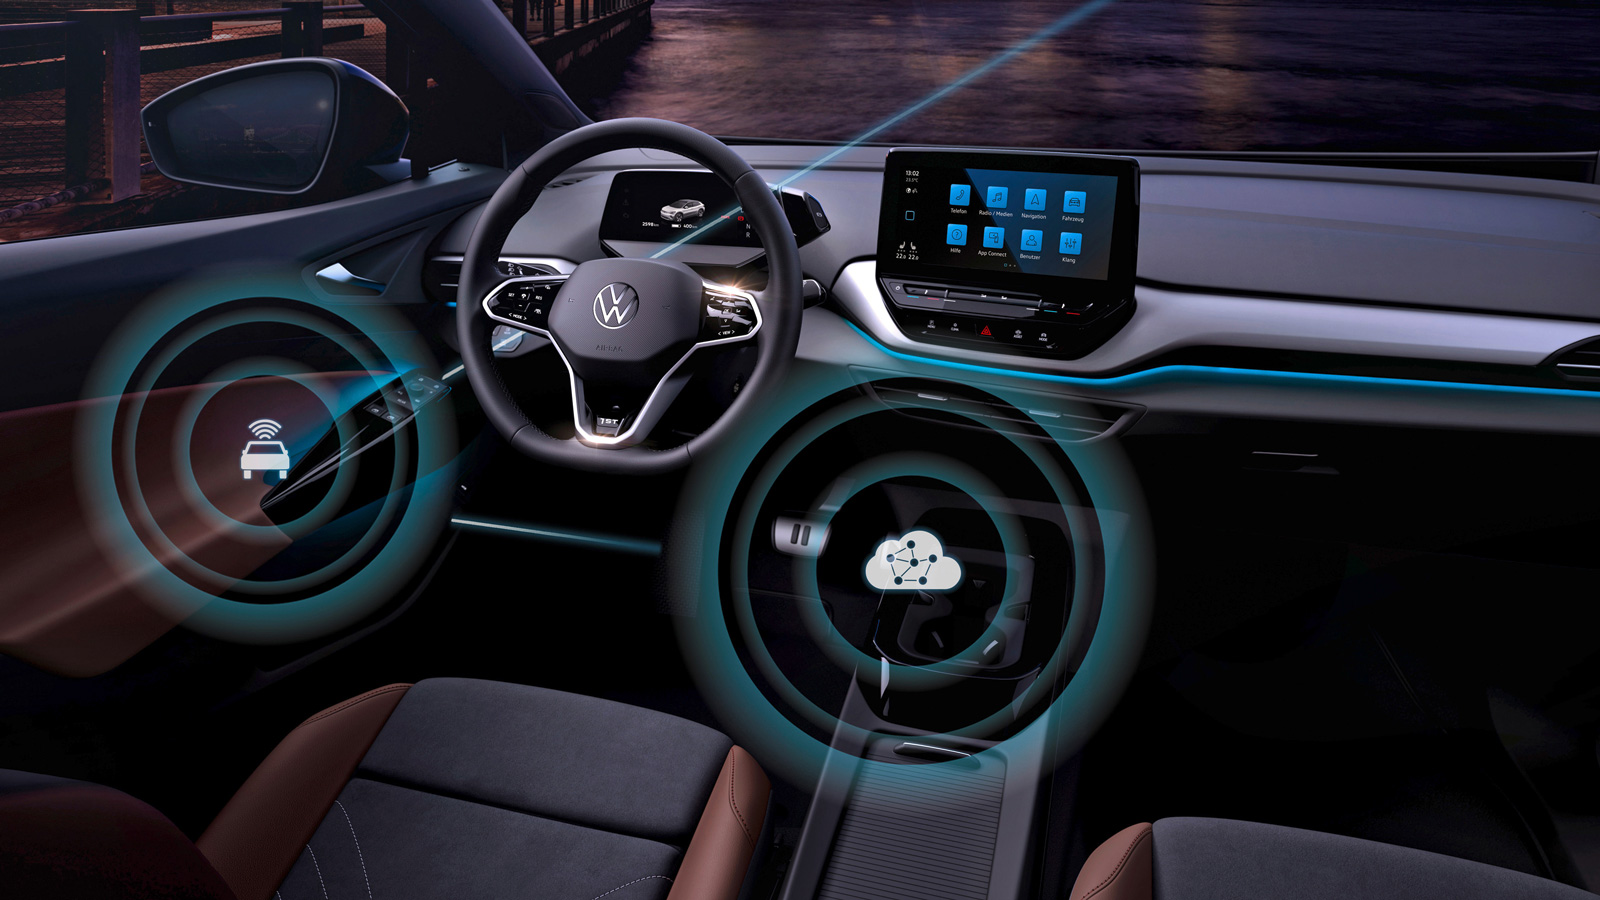 VW Golf 8: Software-Update soll das Infotainment verbessern - AUTO BILD